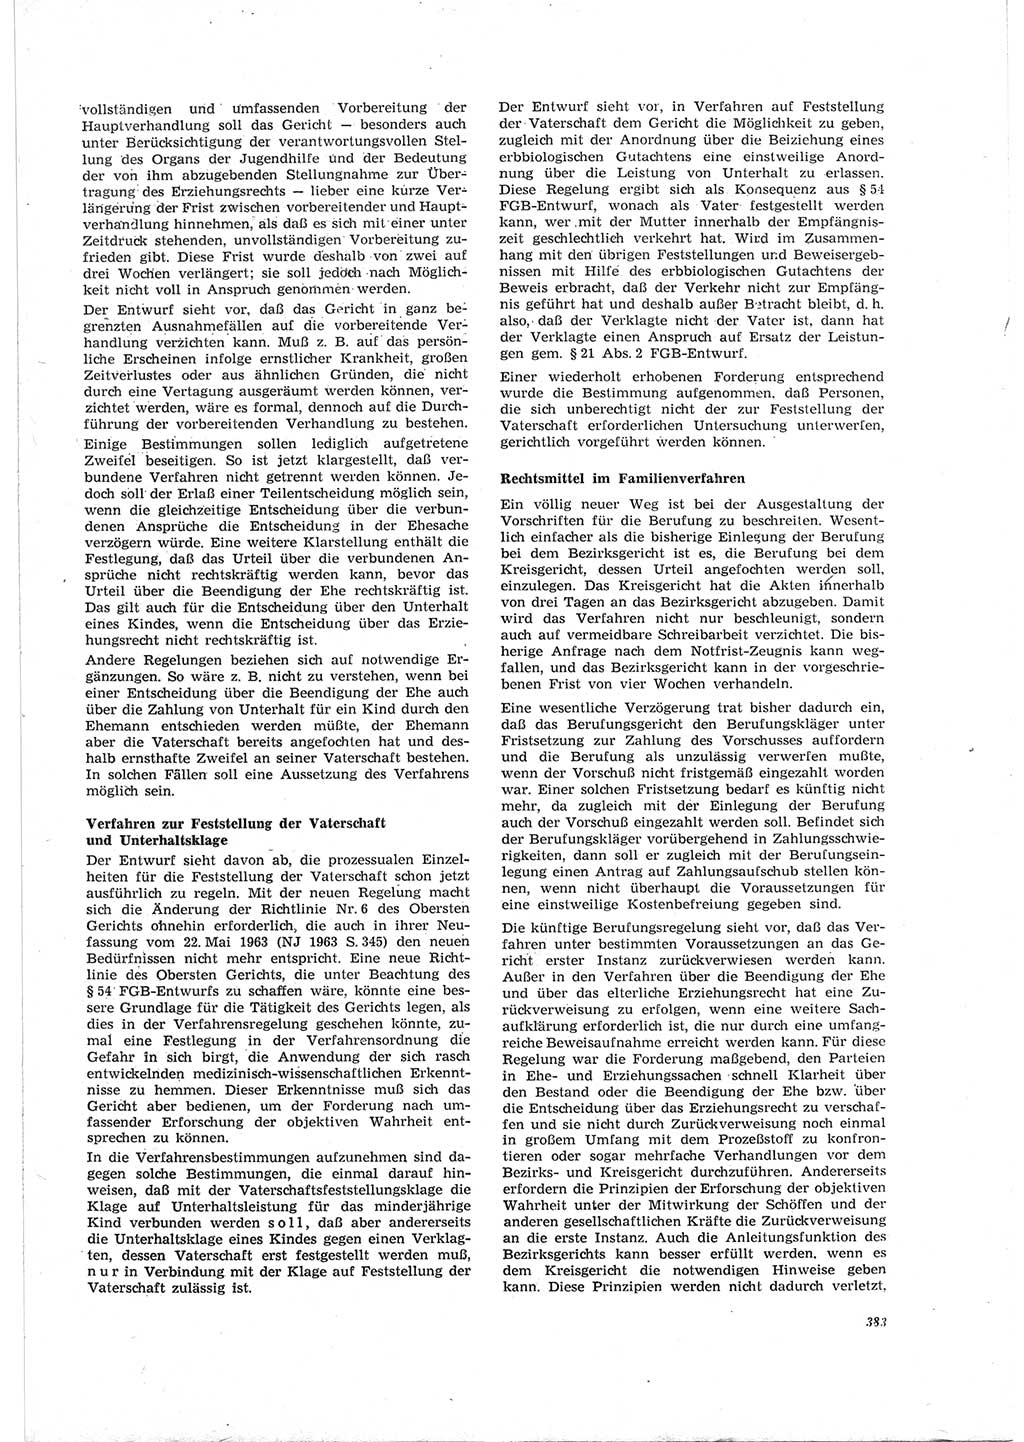 Neue Justiz (NJ), Zeitschrift für Recht und Rechtswissenschaft [Deutsche Demokratische Republik (DDR)], 19. Jahrgang 1965, Seite 383 (NJ DDR 1965, S. 383)